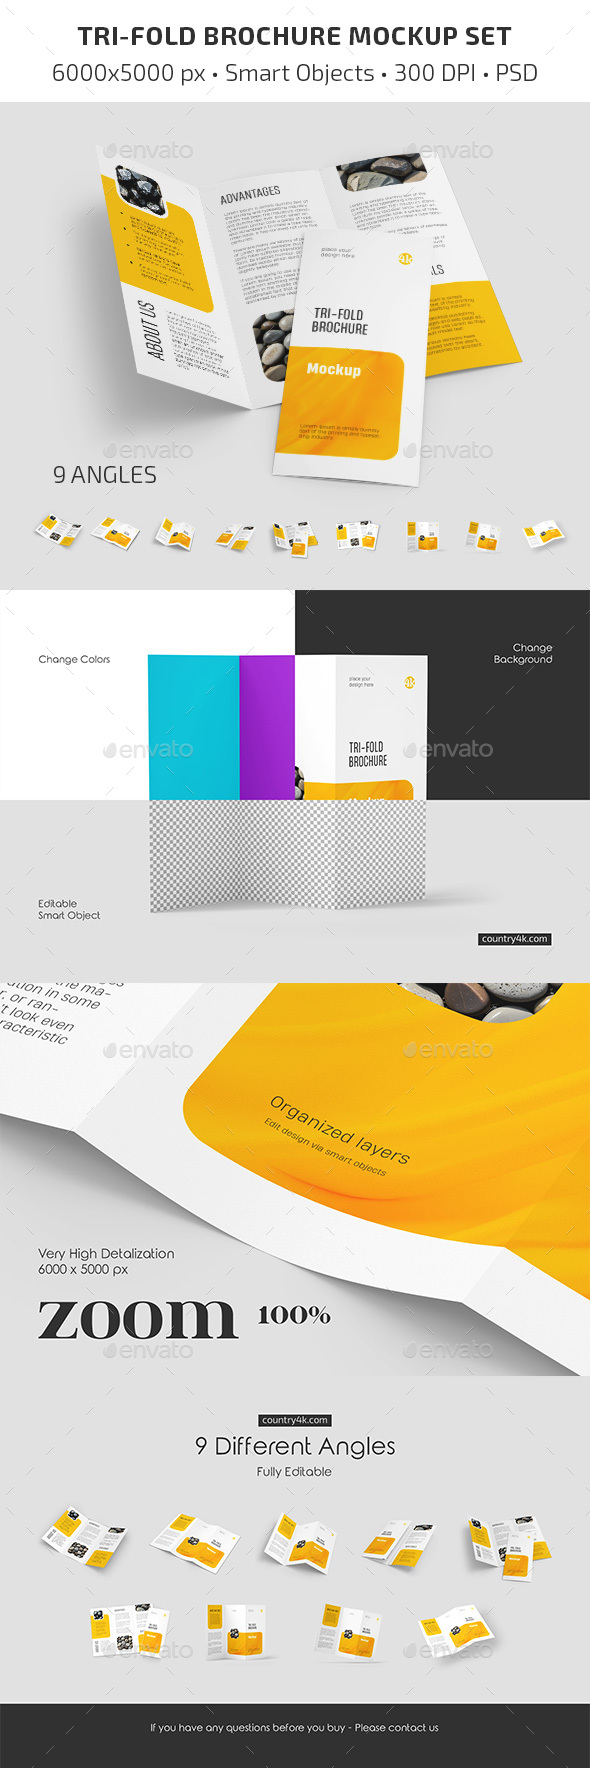 [DOWNLOAD]Tri-Fold Brochure Mockup Set